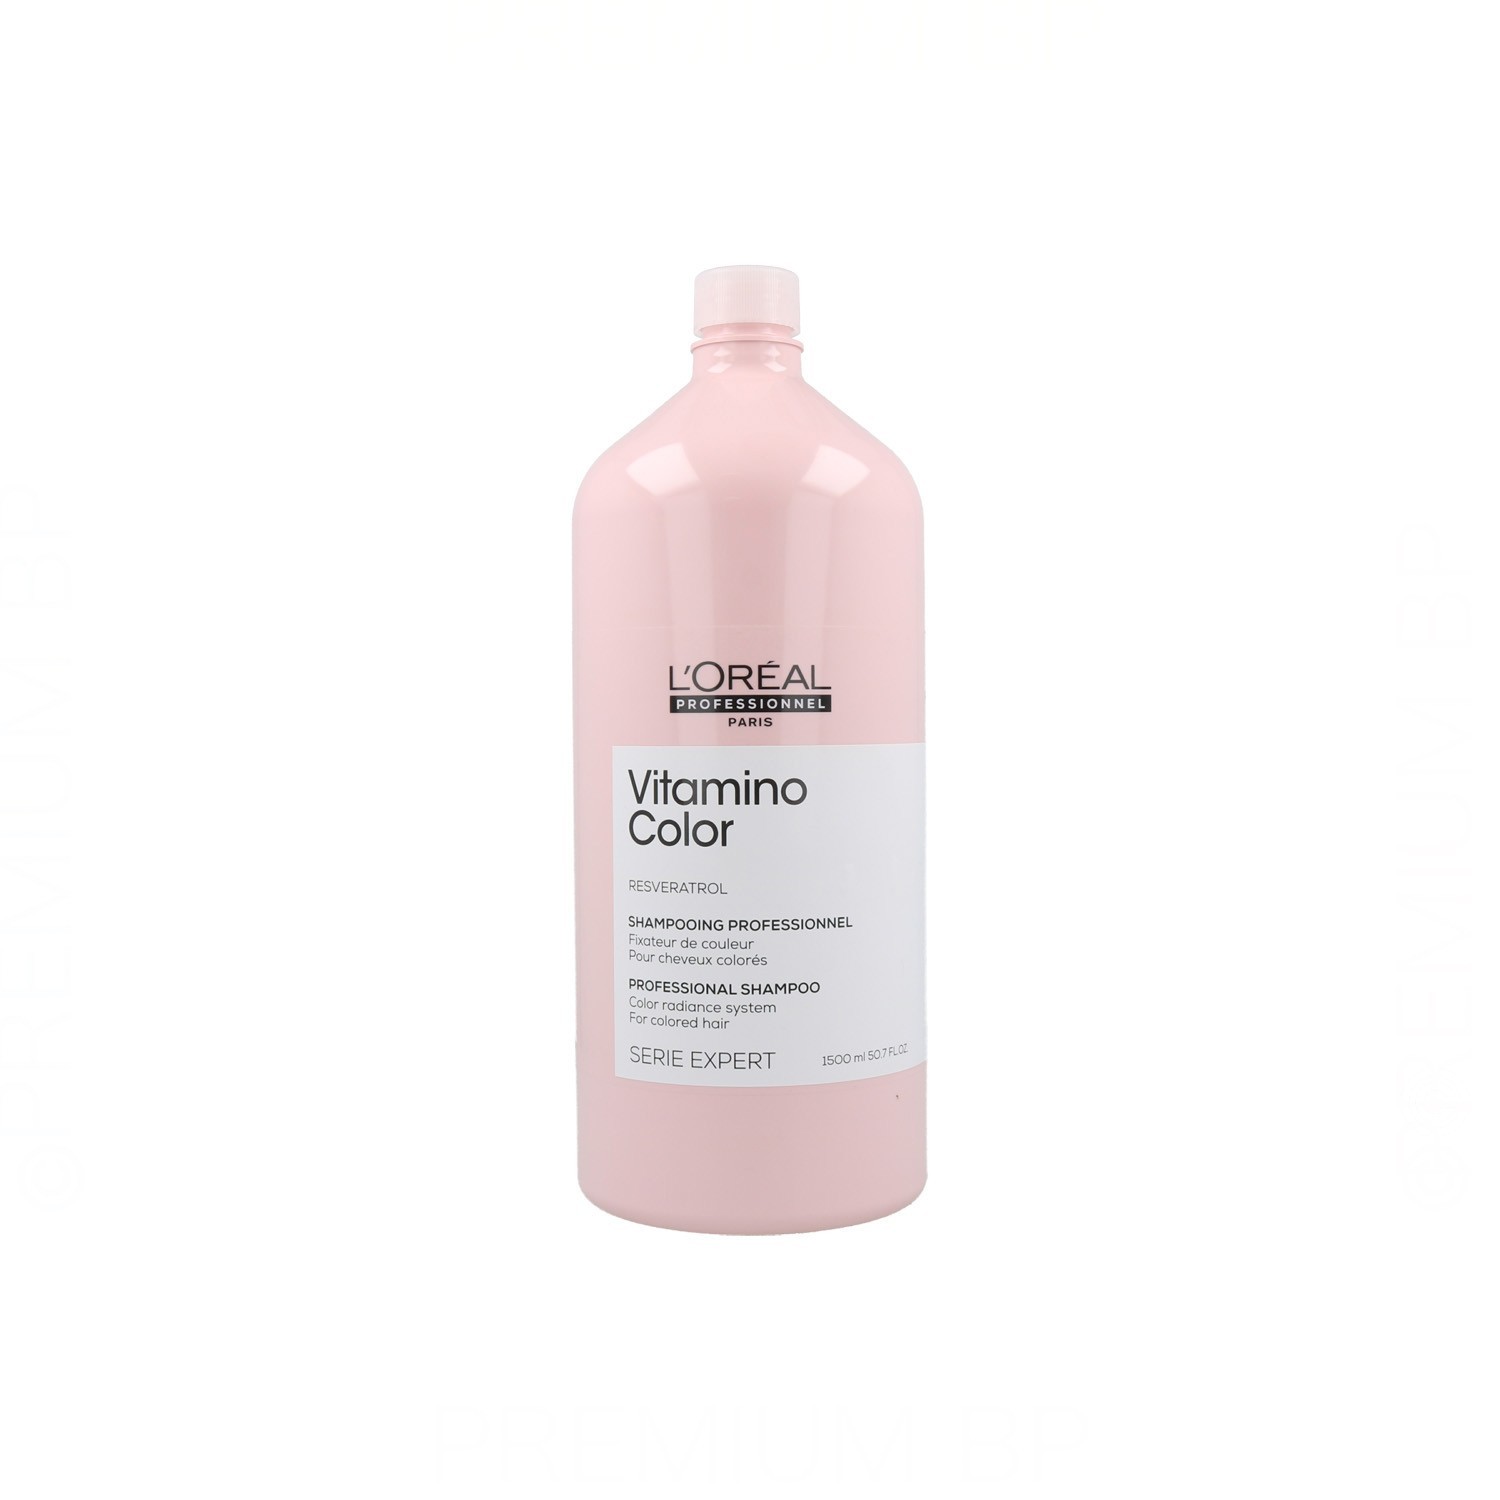 L'Oréal Professionnel - Vitamino Color Shampoo - 1500 ml